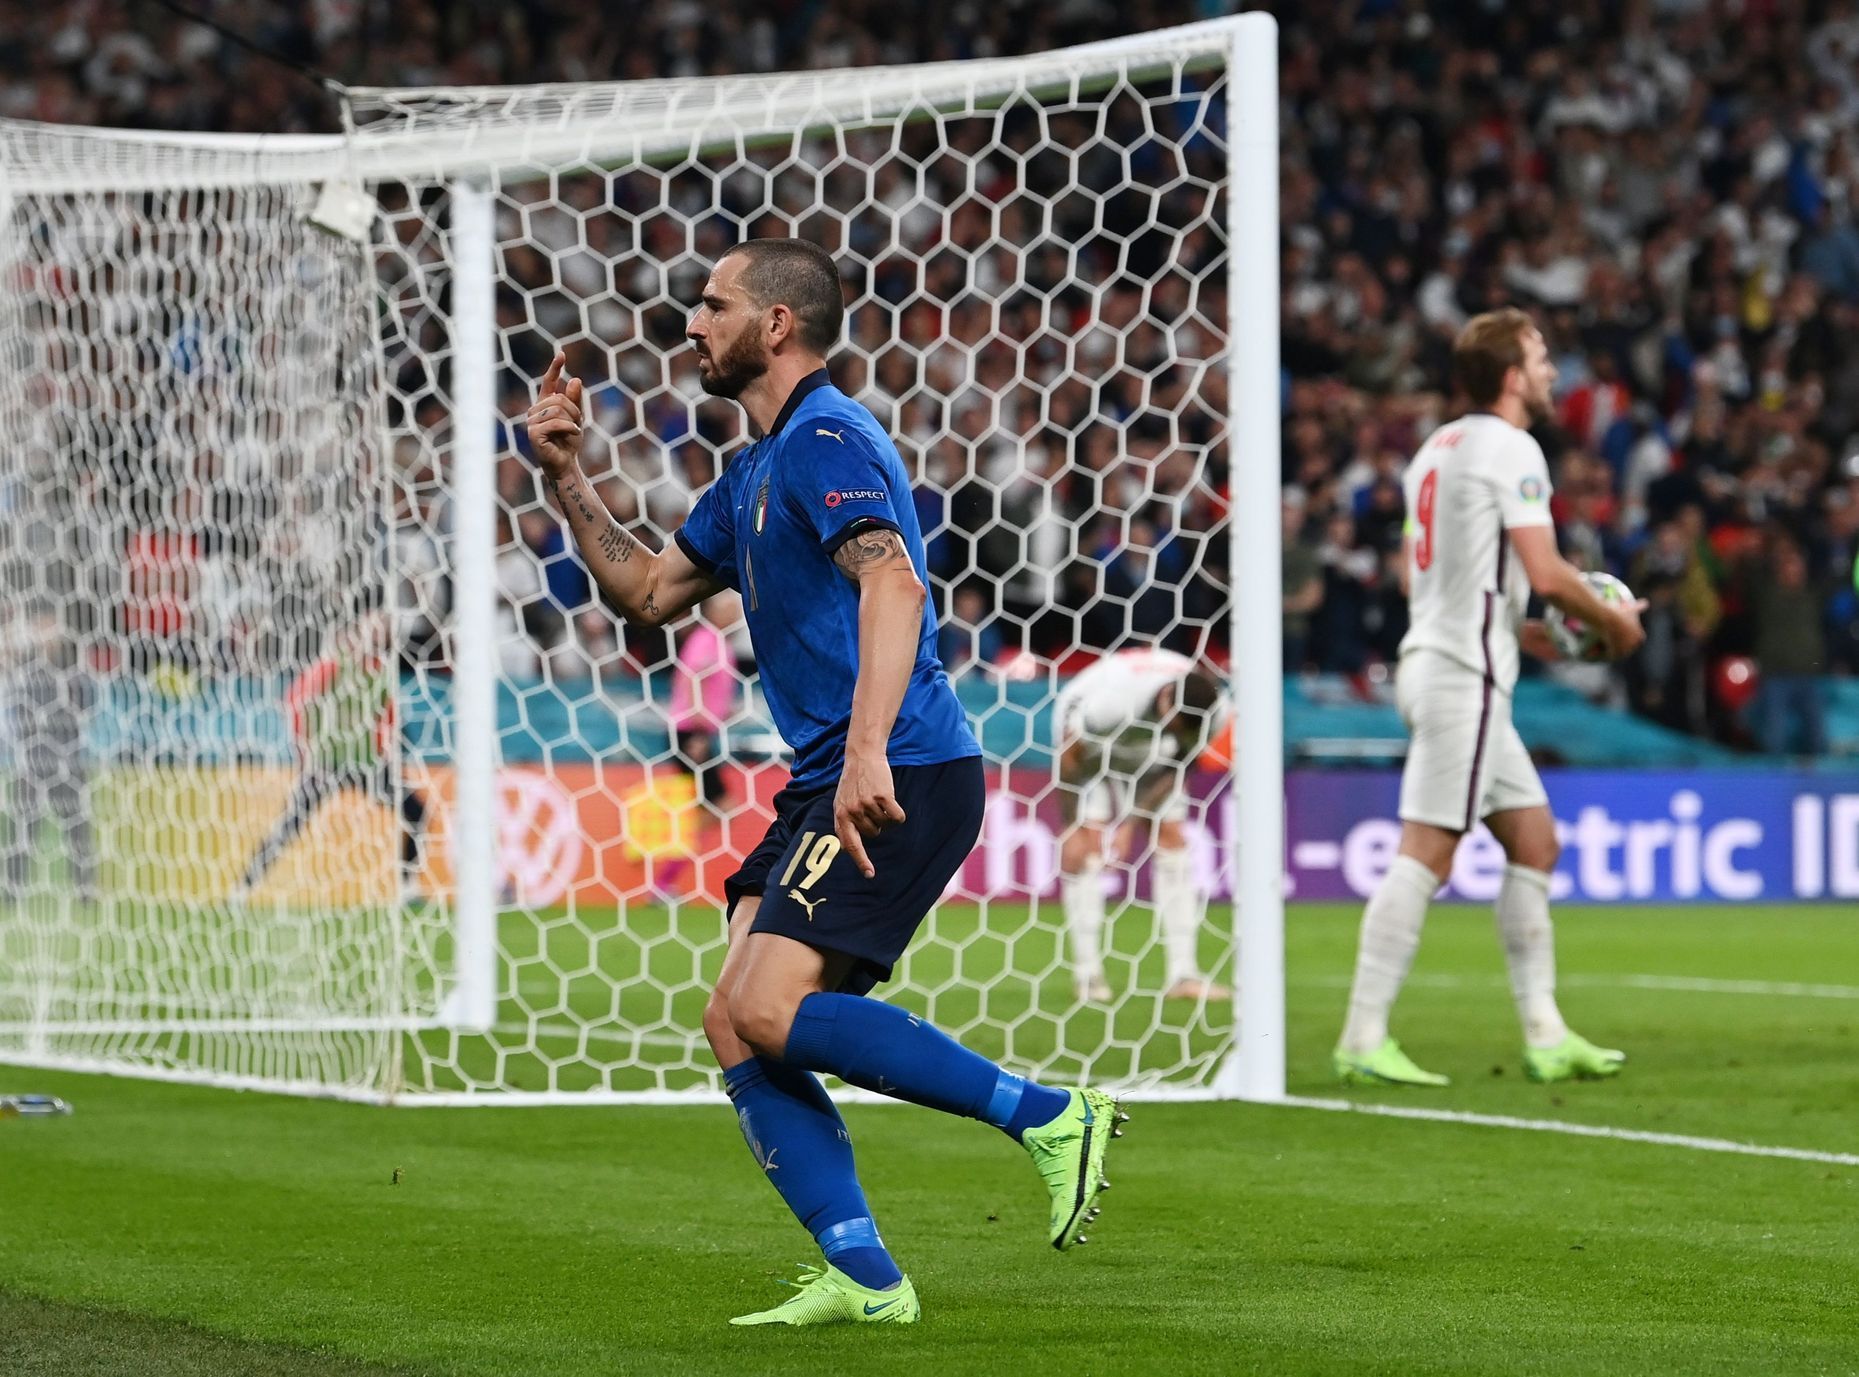 Leonardo Bonucci slaví gól ve finále ME 2020 Itálie - Anglie